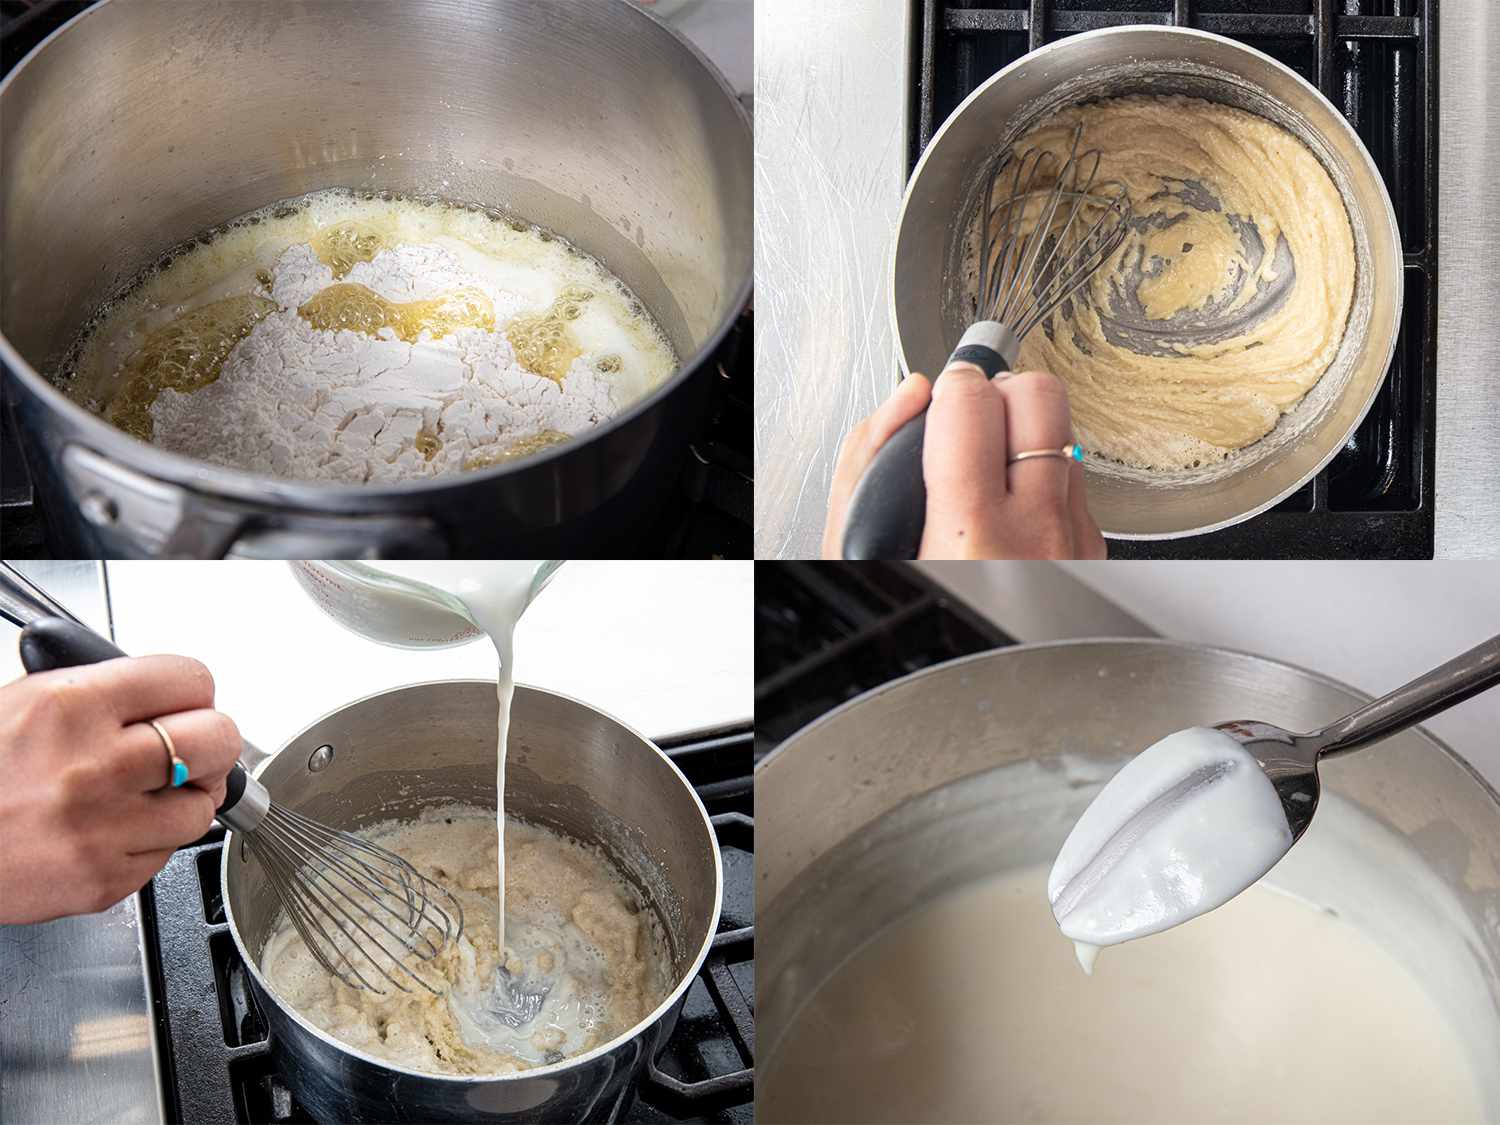 四个图像拼贴。右上:面粉和黄油在锅里。左上:面粉和黄油搅拌至易碎。左下:牛奶被倒入锅中。右下:勺子测试显示酱汁覆盖勺子。